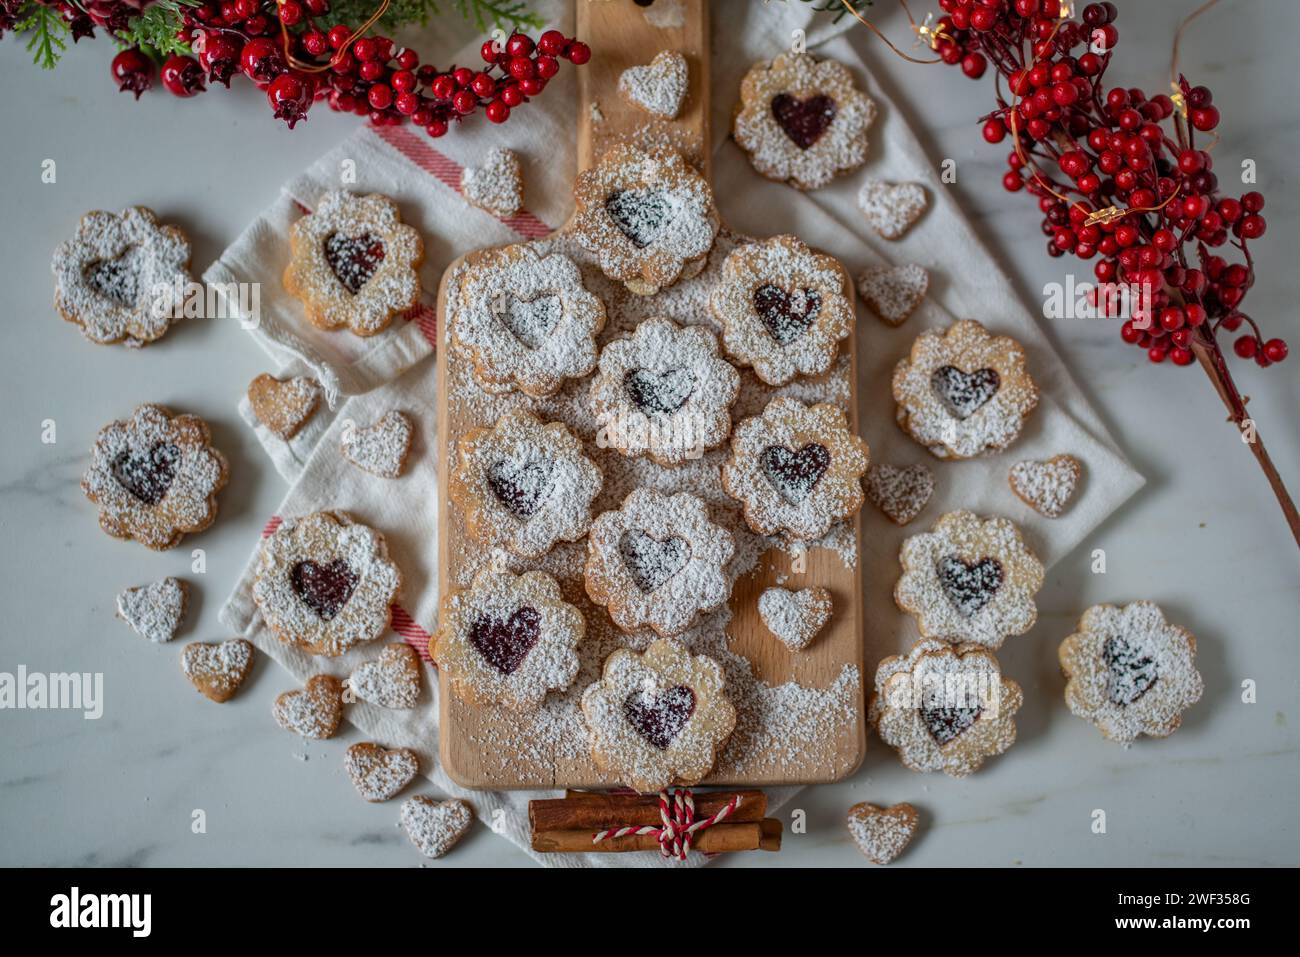 Biscuits maison biscuits avec confiture de fraises Banque D'Images